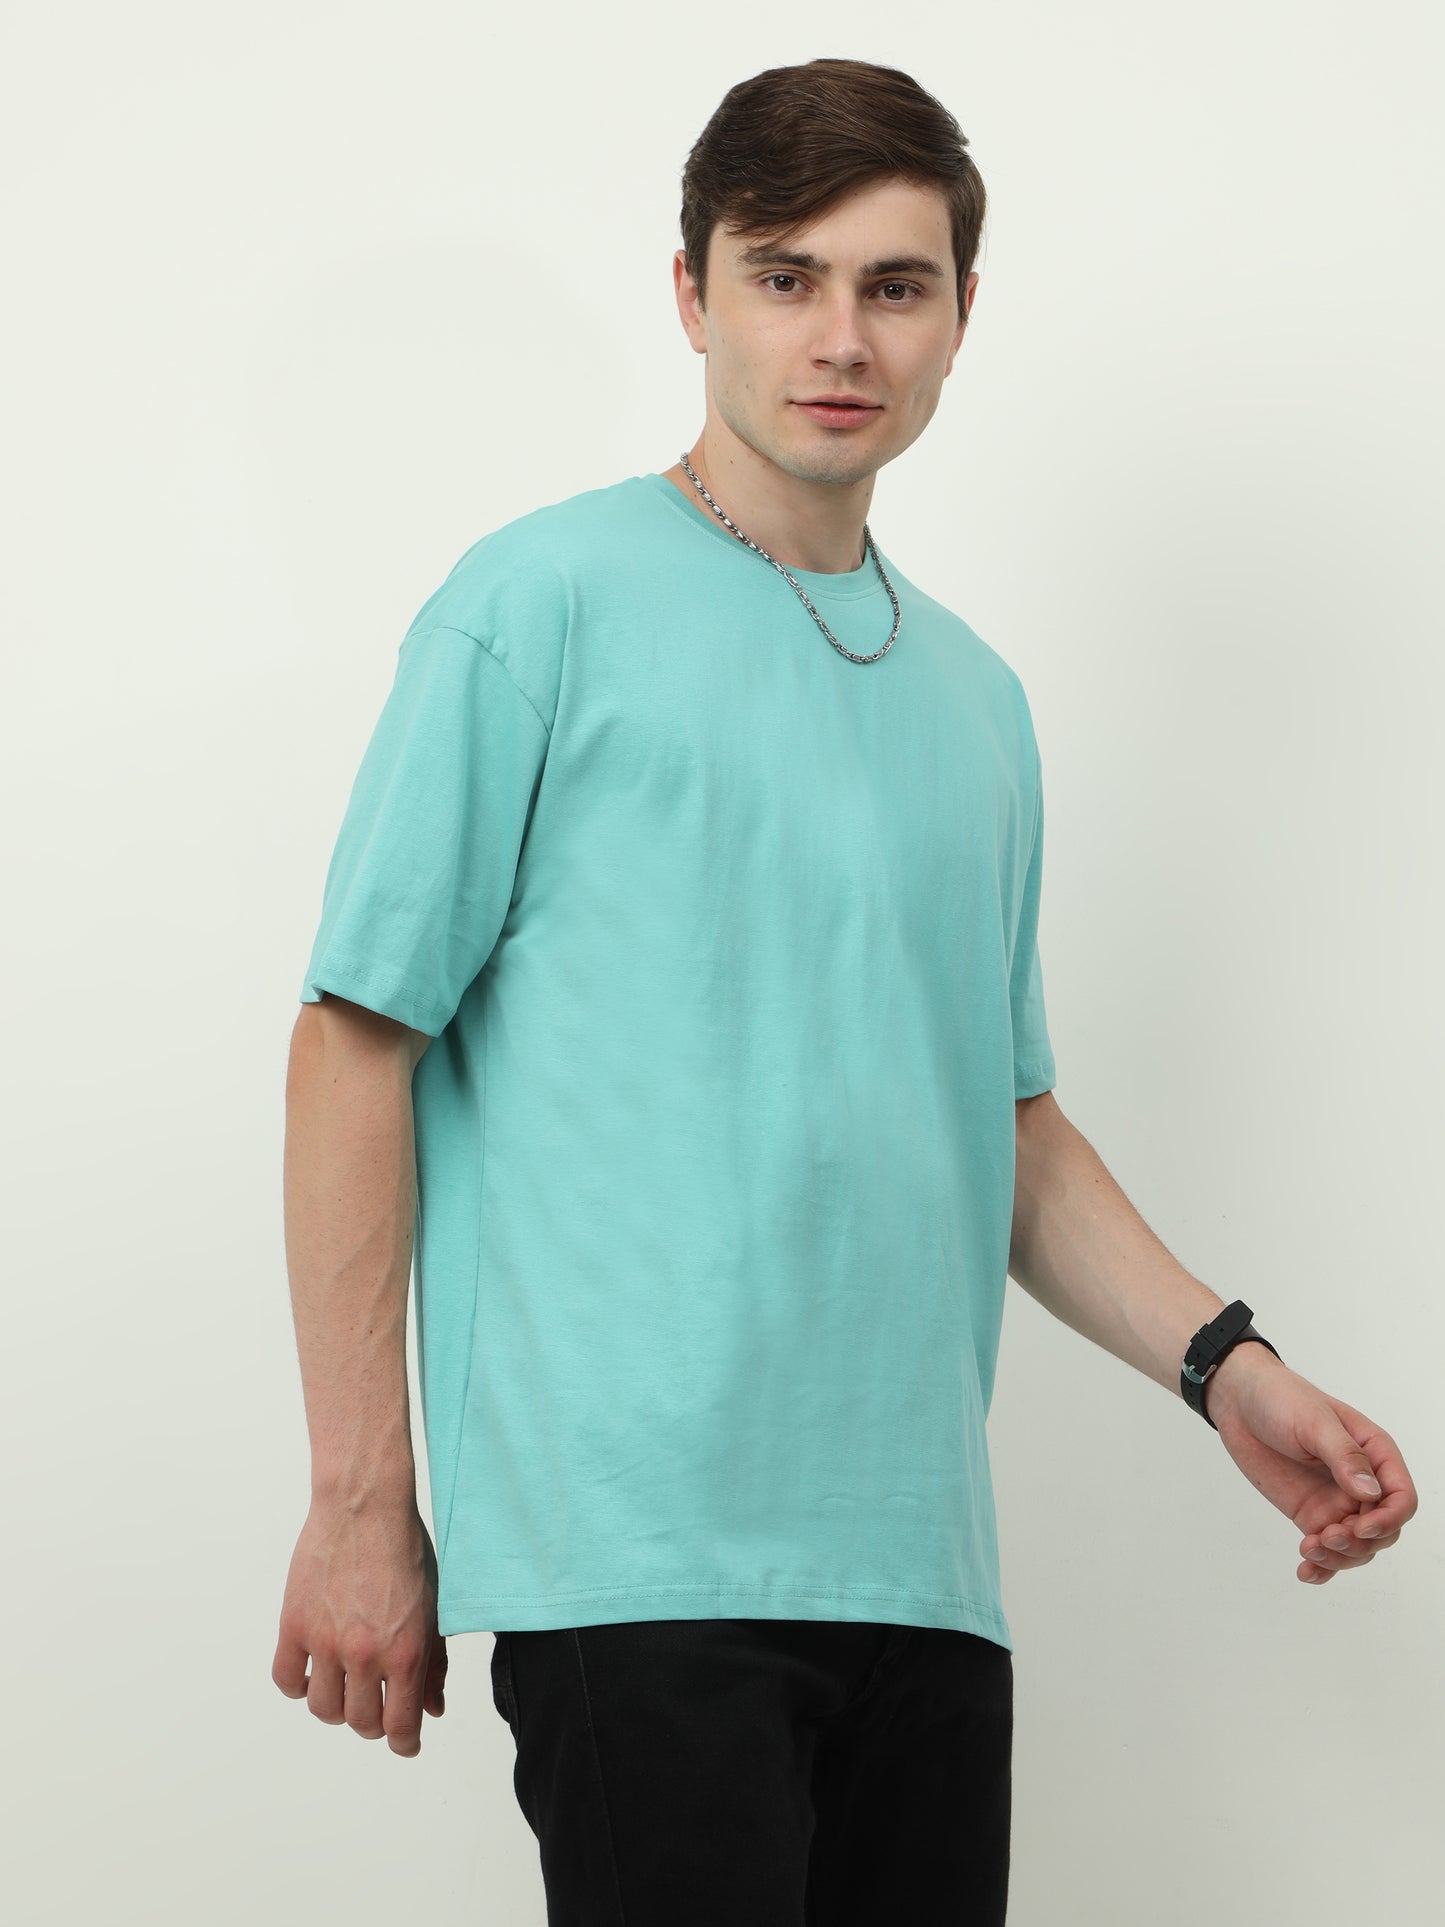 Aqua Marine Oversized T-shirt - UNISEX